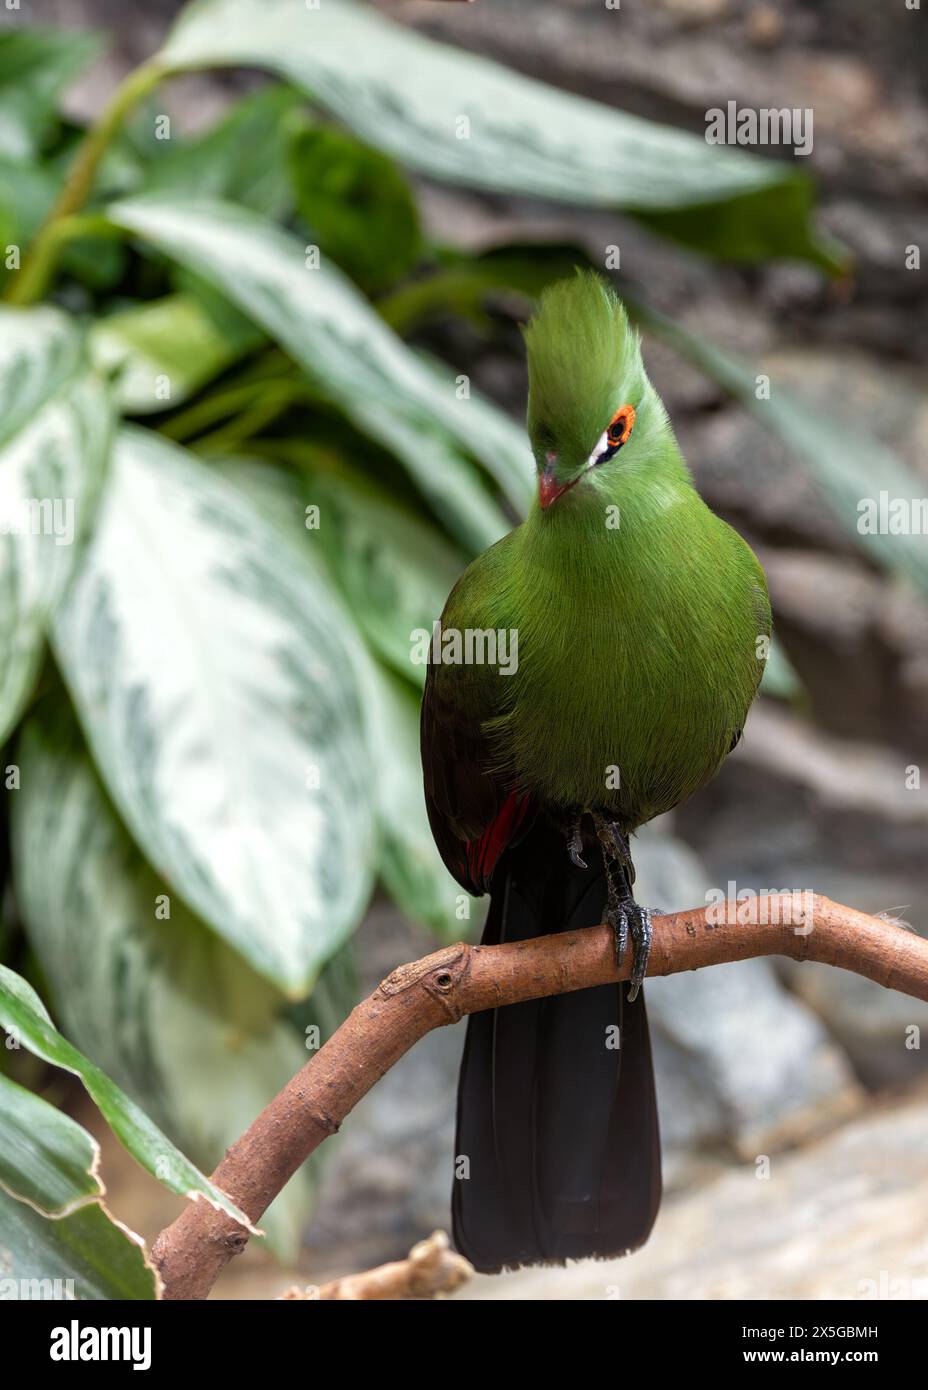 Splendido uccello di medie dimensioni con piumaggio verde brillante, becco rosso e cerotti alari cremisi. Si trova nelle lussureggianti foreste pluviali e nei boschi del sub-sahariano Foto Stock